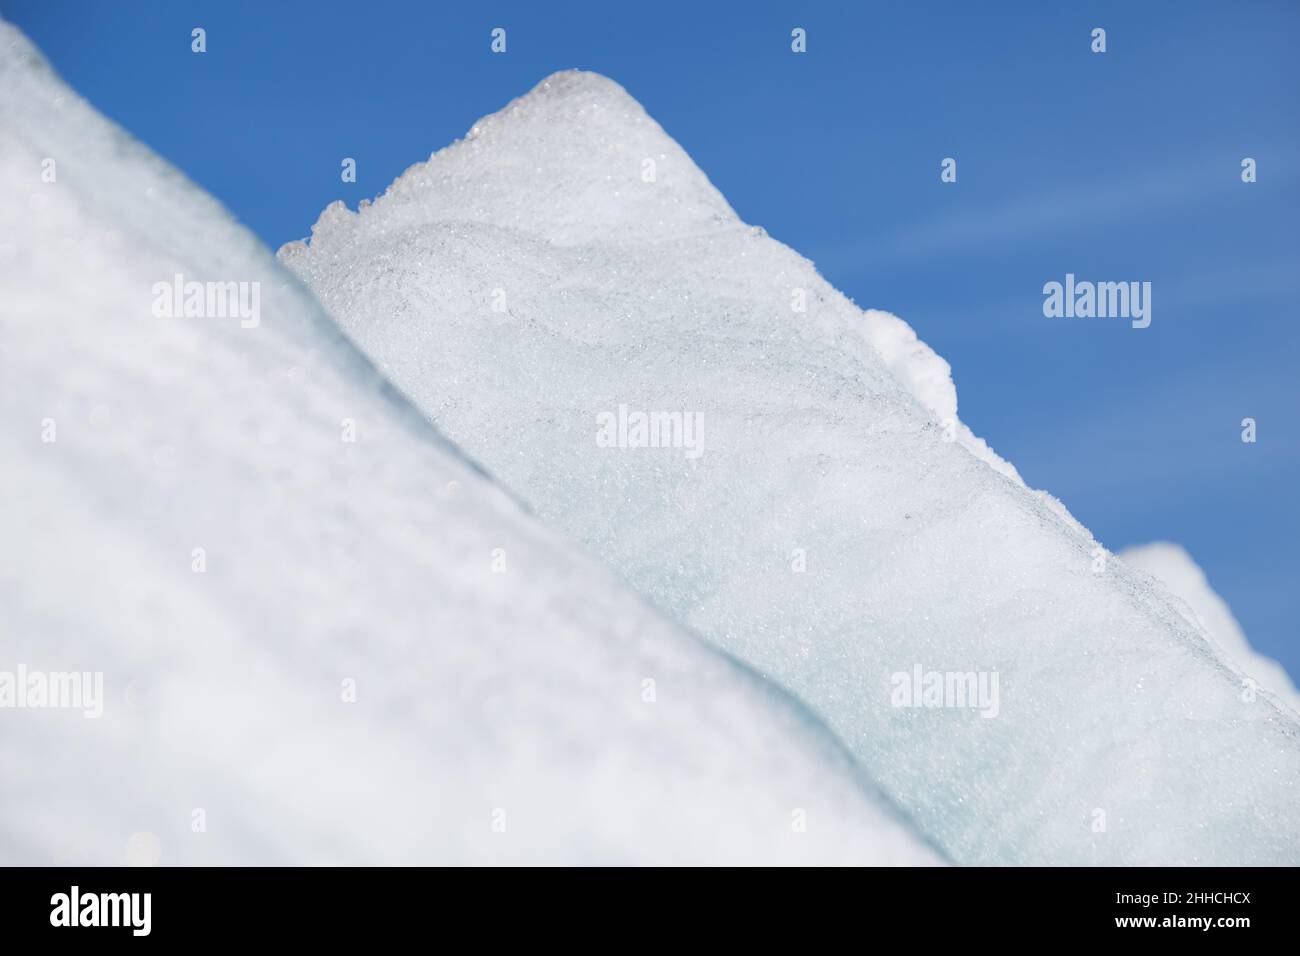 Pyramides de glace en hiver sous ciel bleu.Arrière-plan naturel en hiver. Banque D'Images